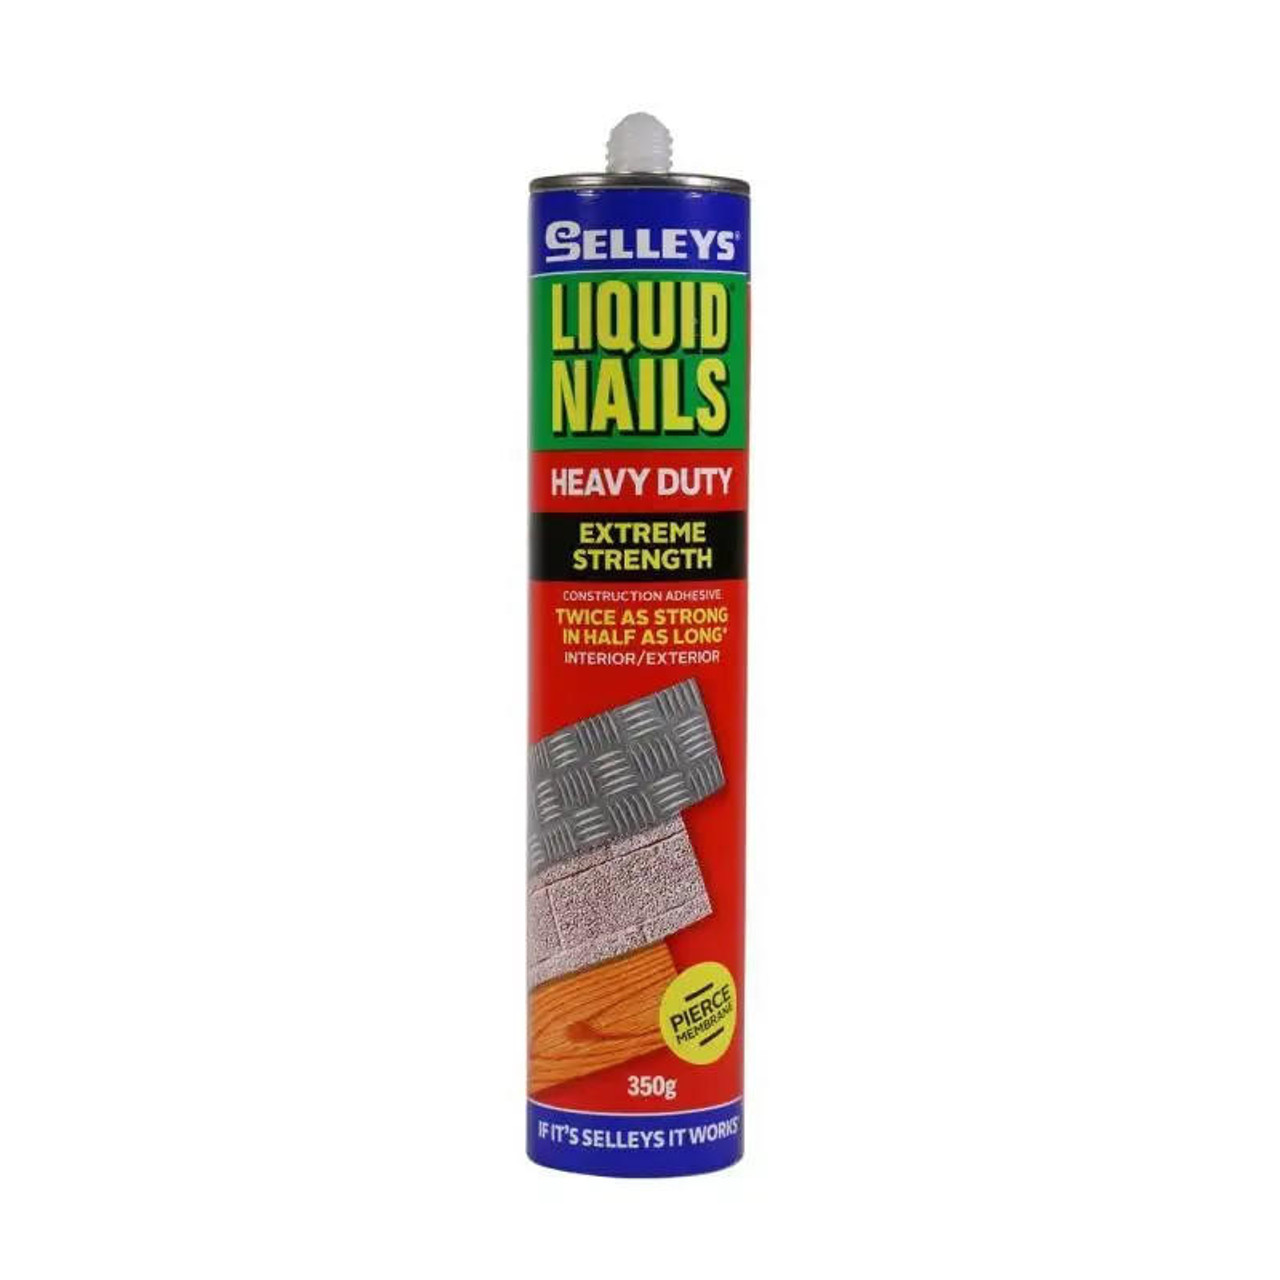 Selleys Liquid Nails Heavy Duty